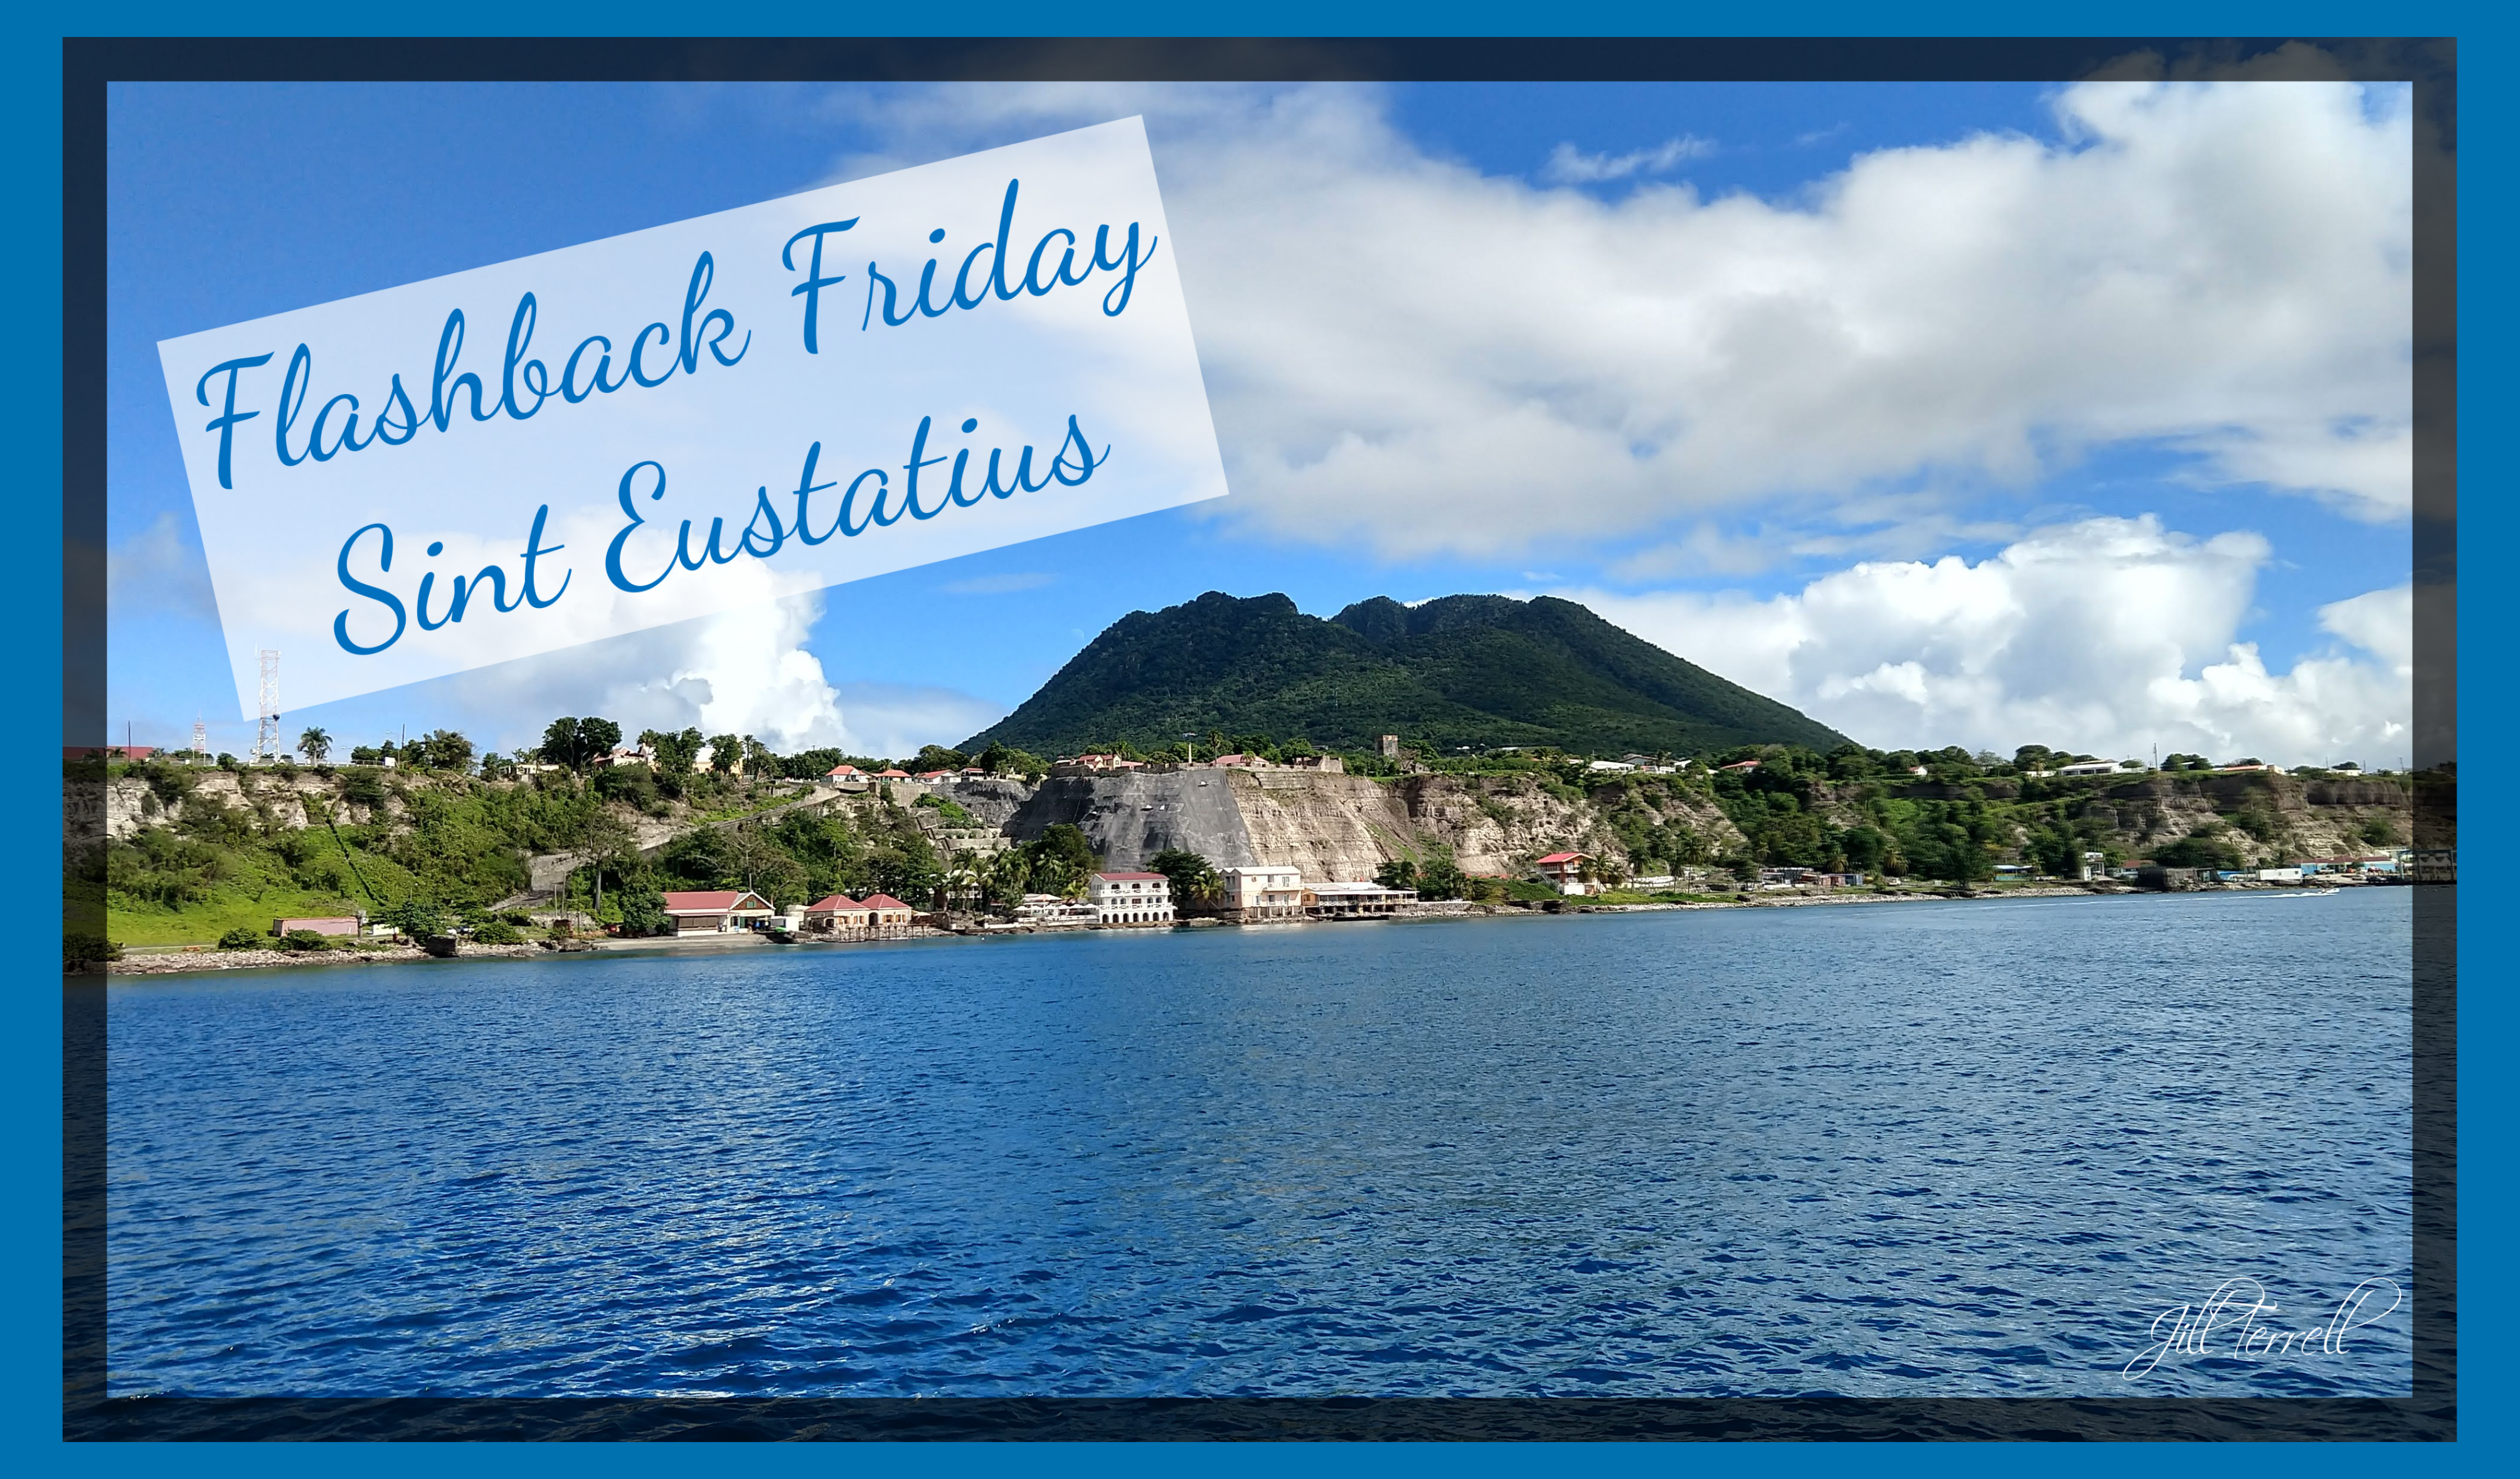 Flashback Friday, Sint Eustatius